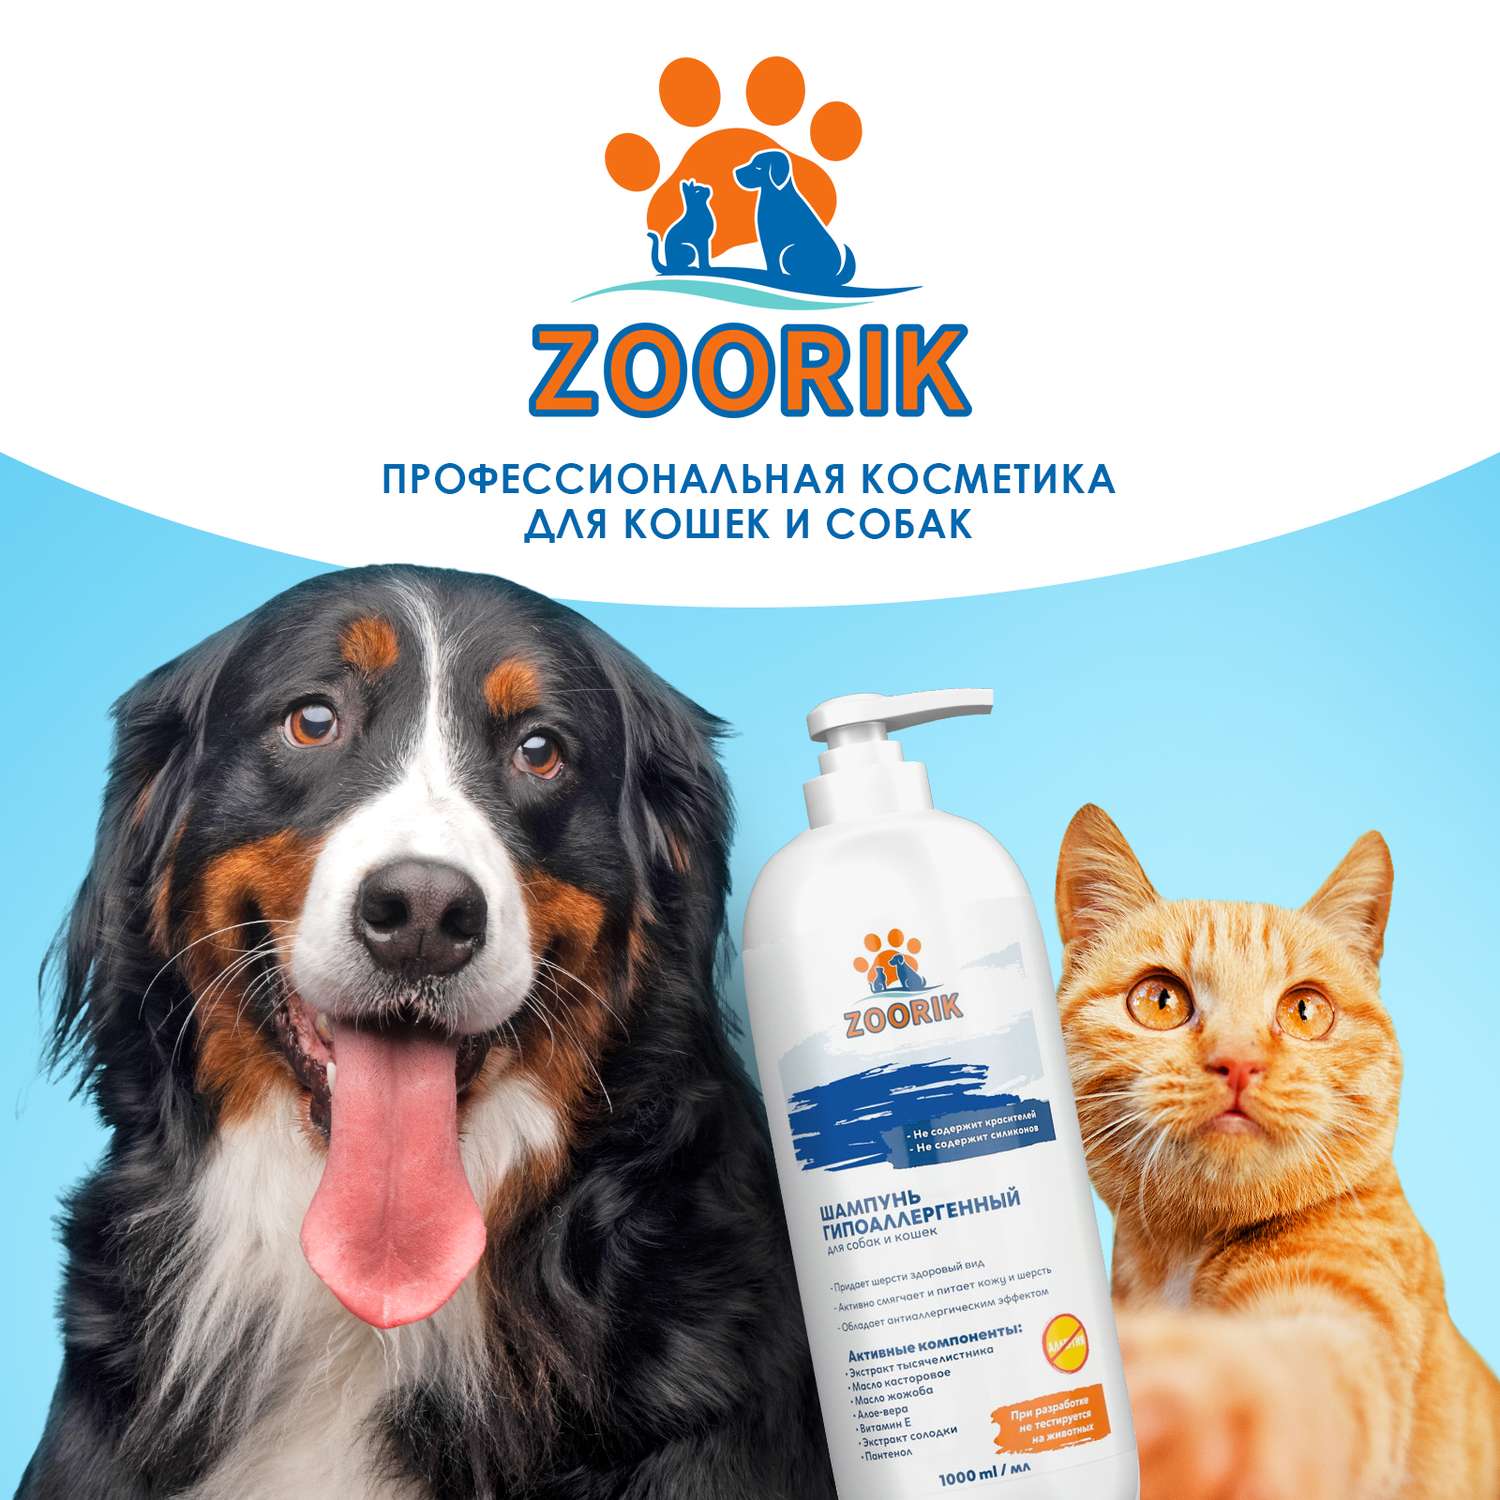 Шампунь для собак и кошек ZOORIK гипоаллергенный 1000 мл - фото 9